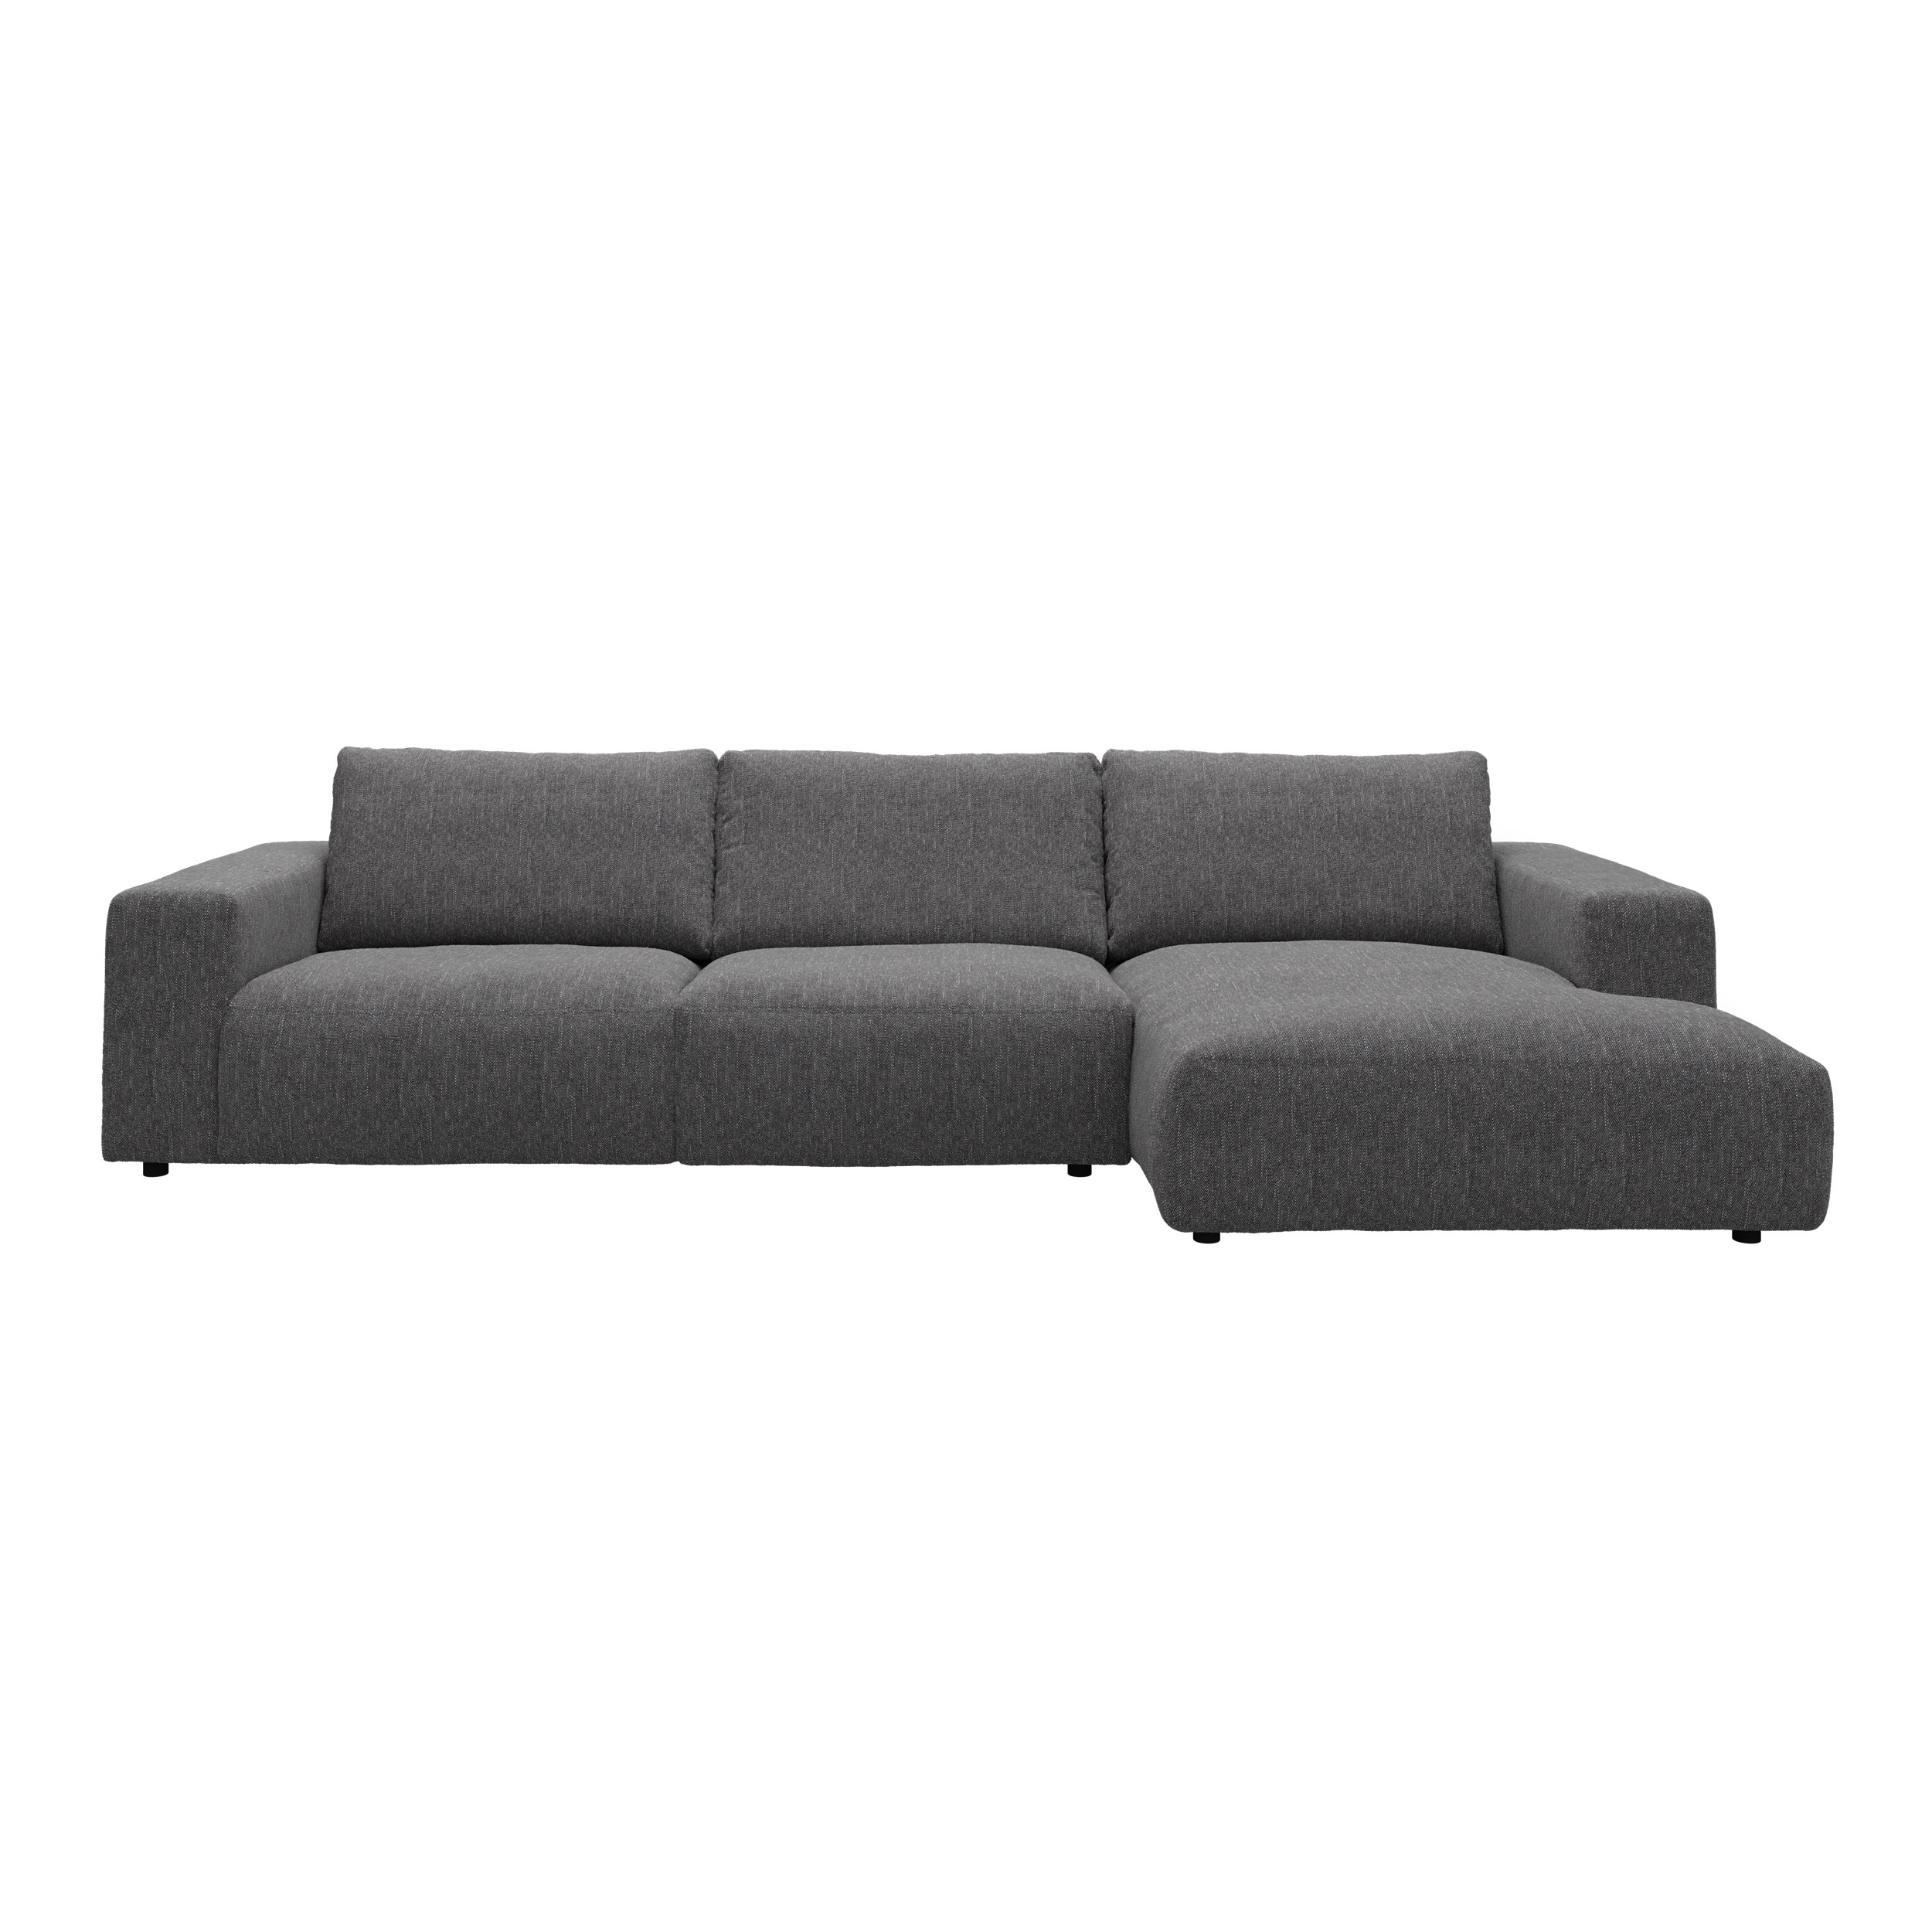 Harlow Sofa med chaiselong - Yelda Grey stof, ben i sort plast og S:PURskum på sinusfjedre m.fiber/silikone mix R:Dun/skum mix